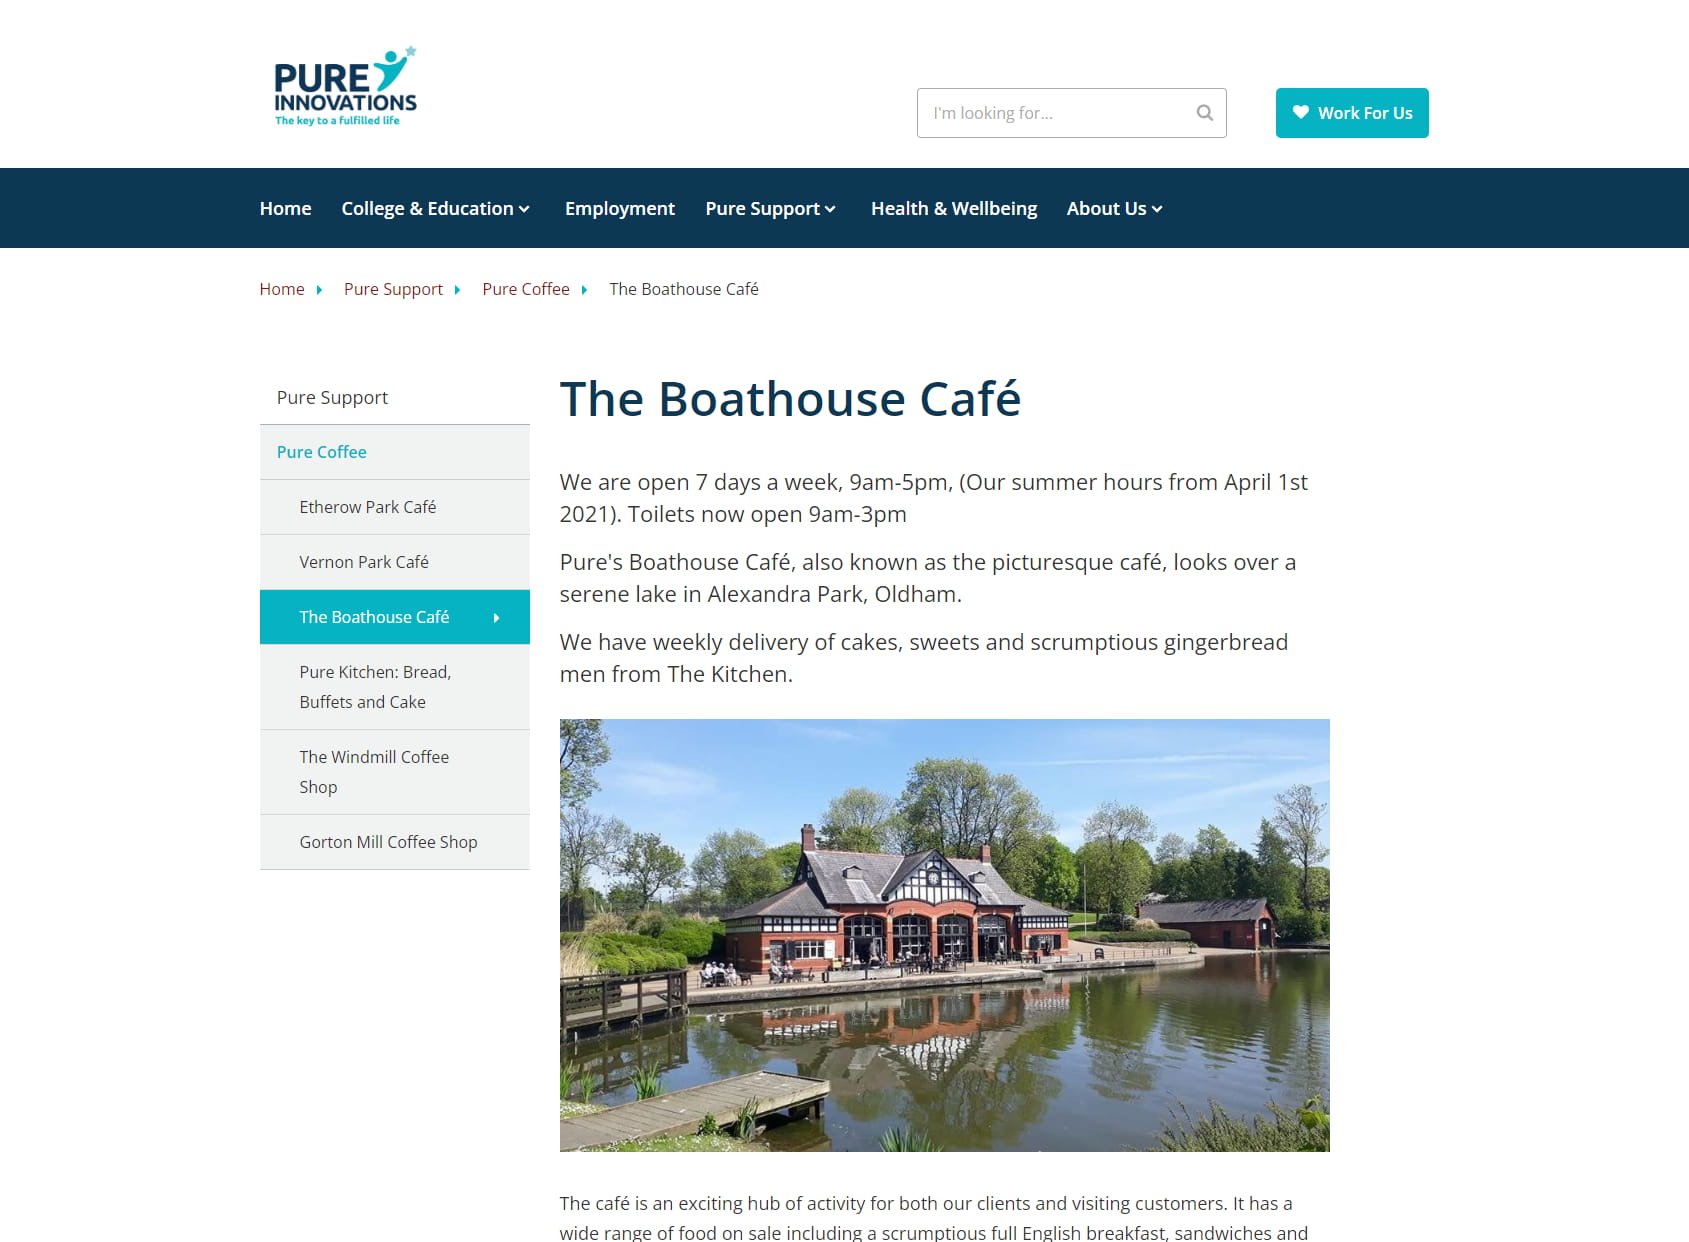 The Boathouse Cafe